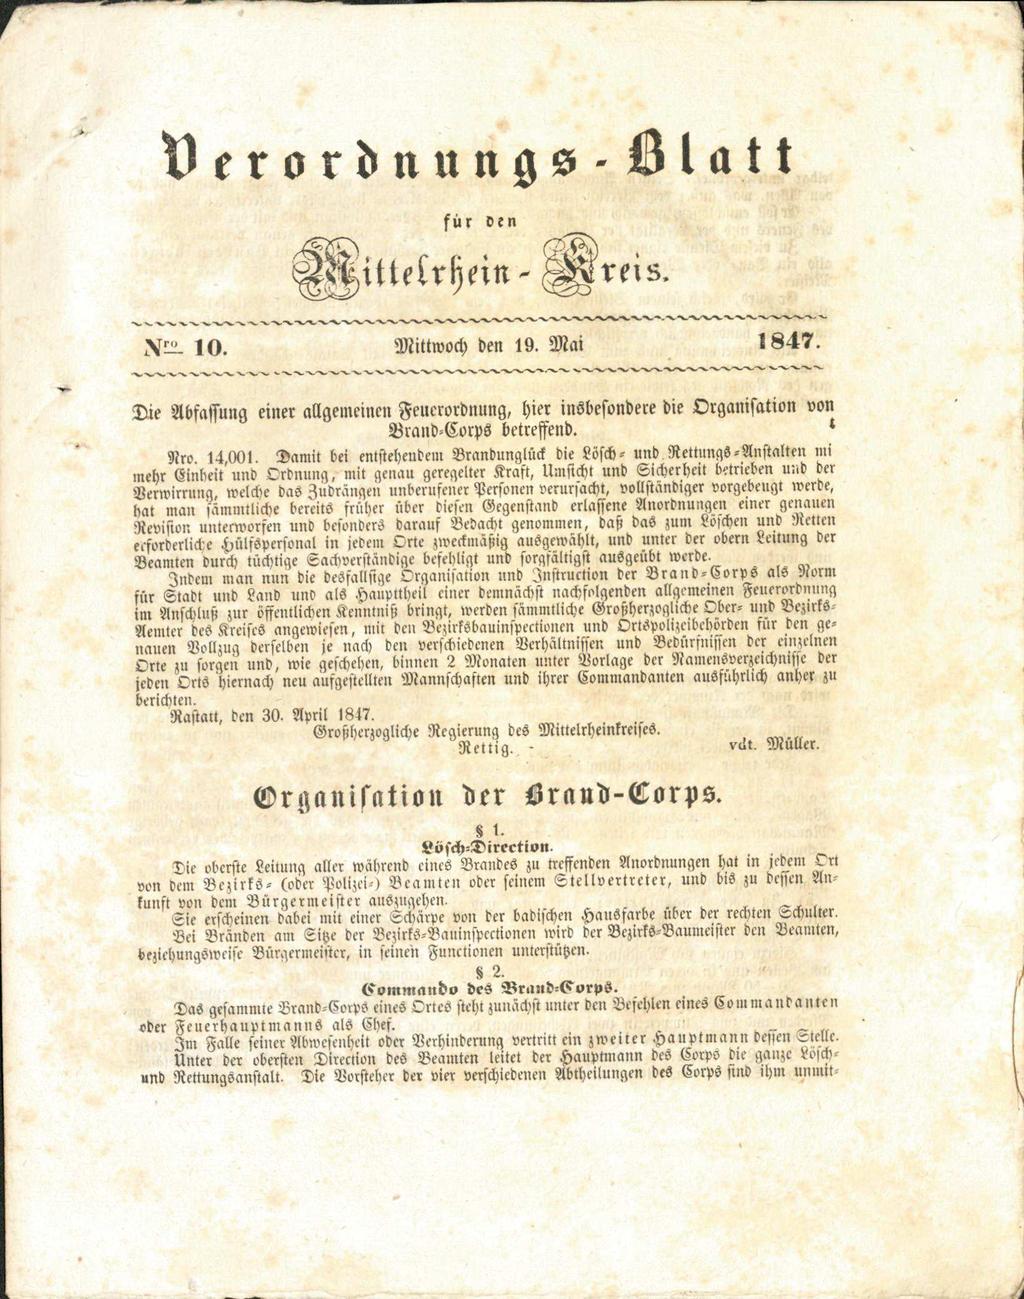 der Brand-Corps vom 20. April 1847. 6 Sie ist wegweisend für den Wandel von der Feuerlöschanstalt zur Feuerwehr und kann als der Ursprung der deutschen Feuerwehrgesetzgebung betrachtet werden.